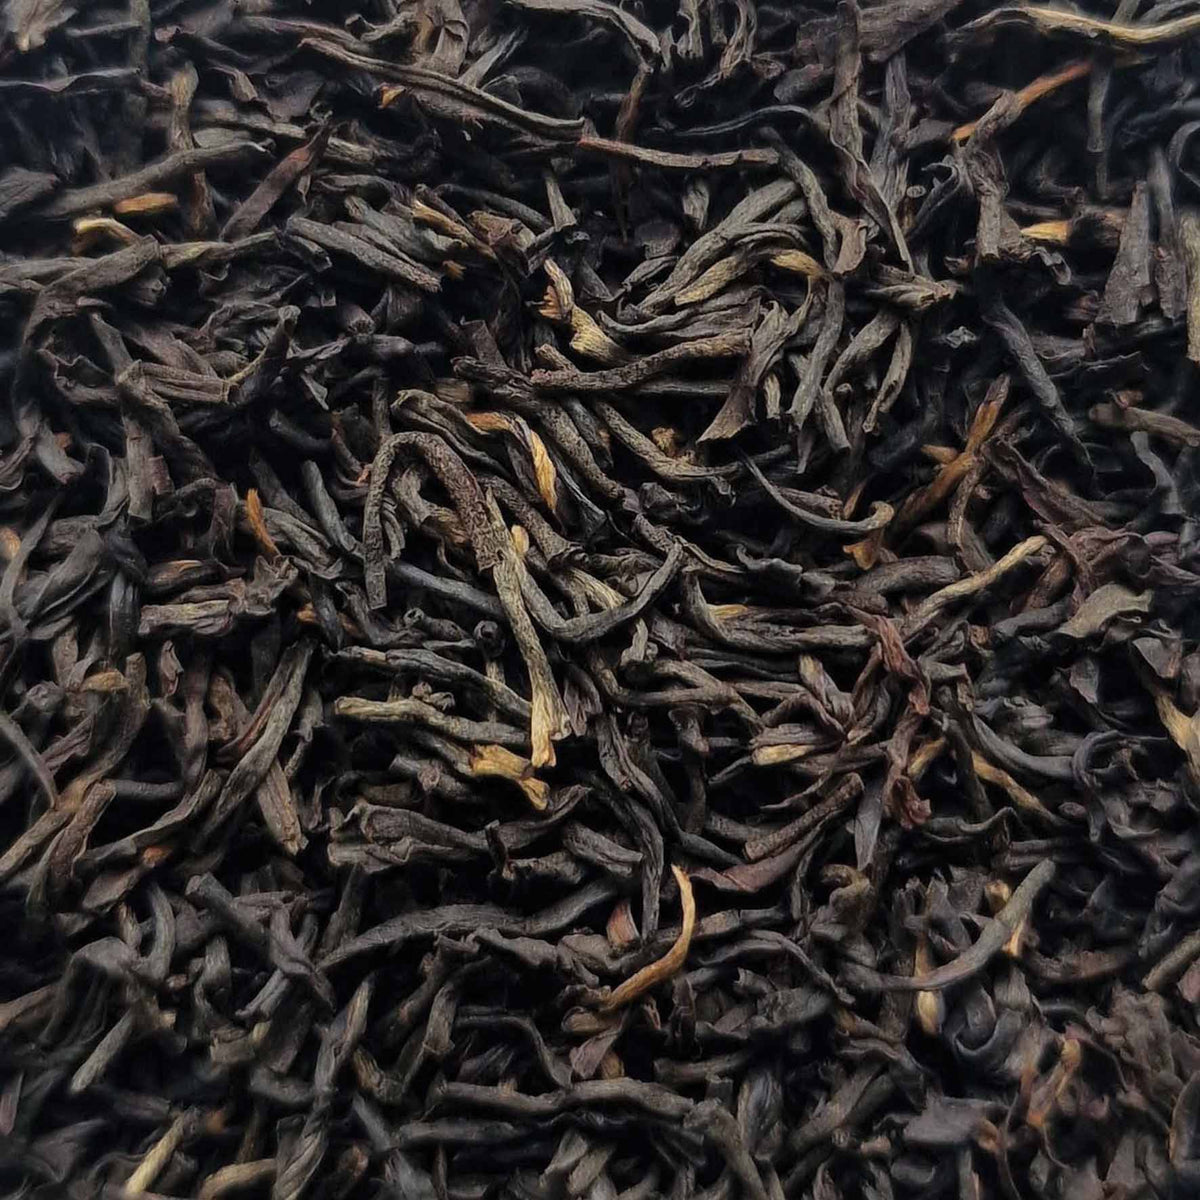 Premium Kenya Black Estate Loose Leaf Tea - tea leaves